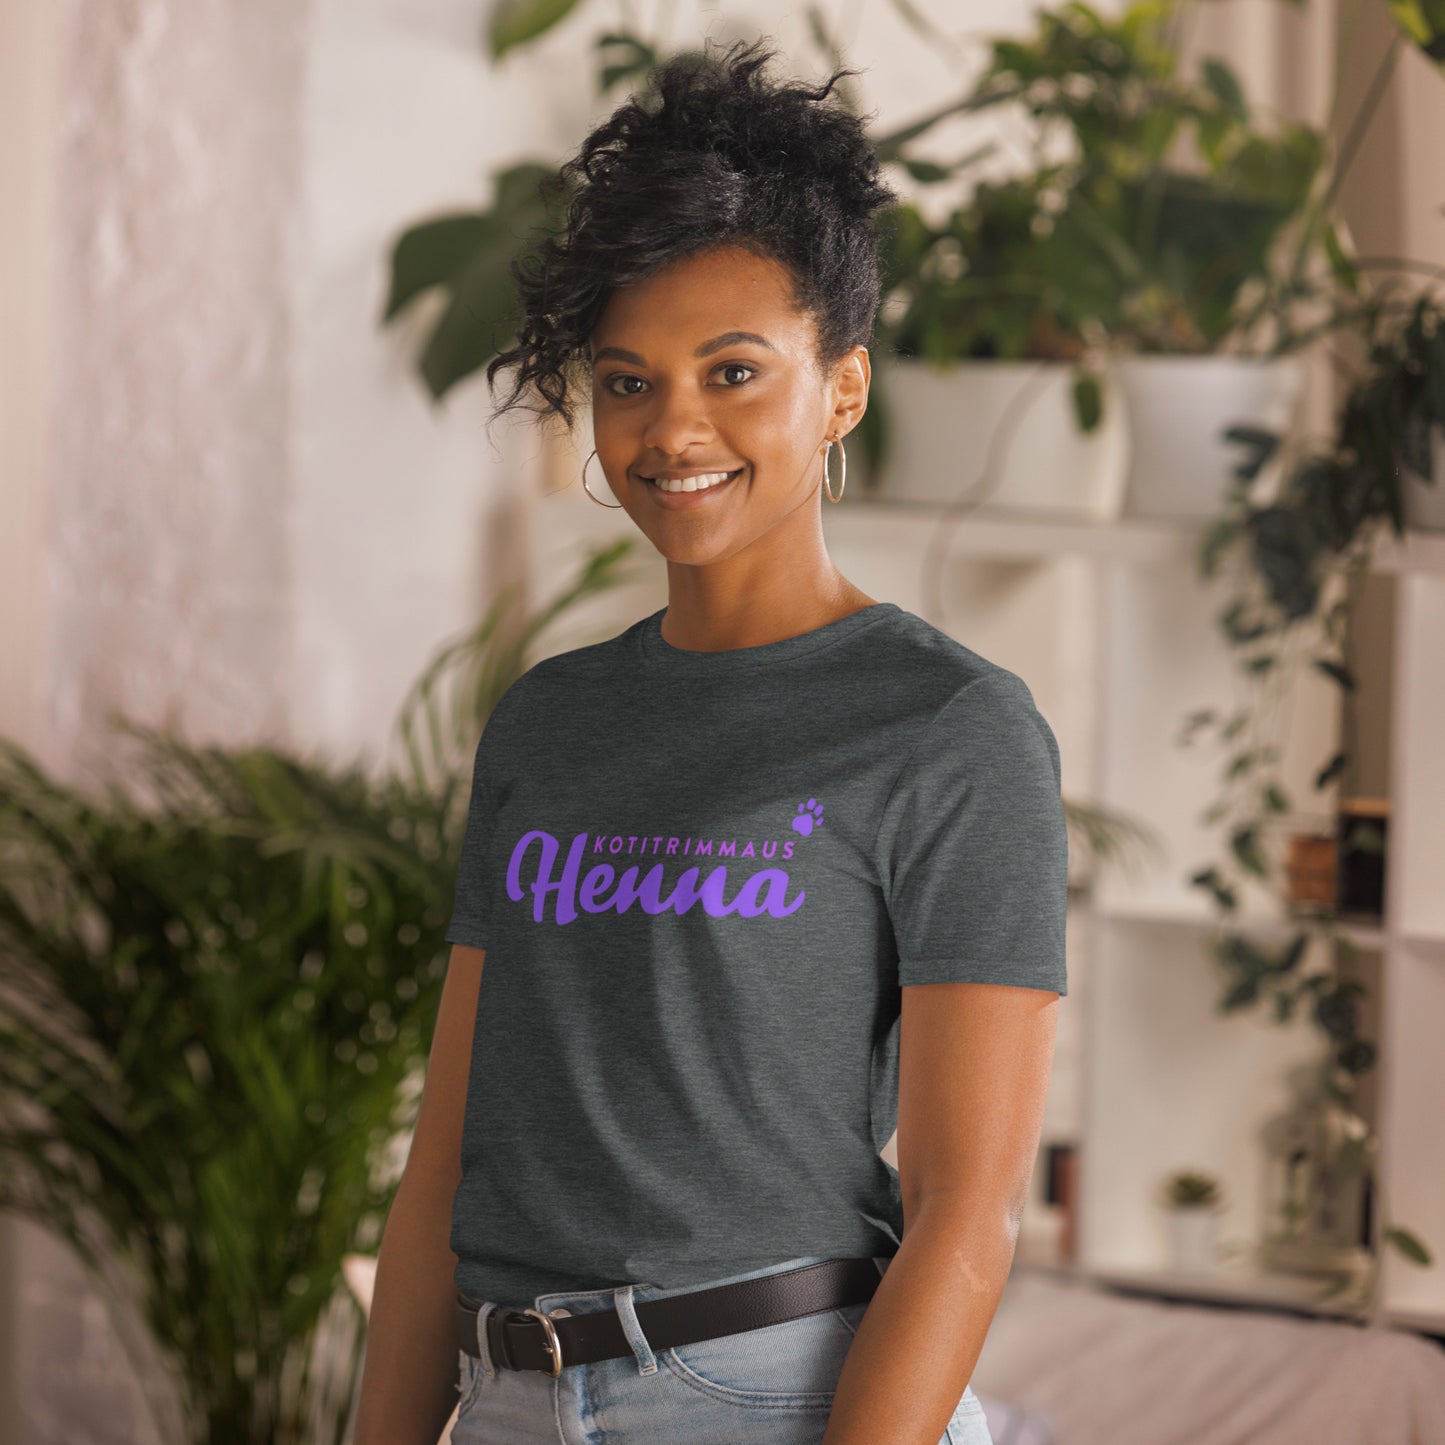 T-Shirt mit der Aufschrift „Home Trimmen Henna“.